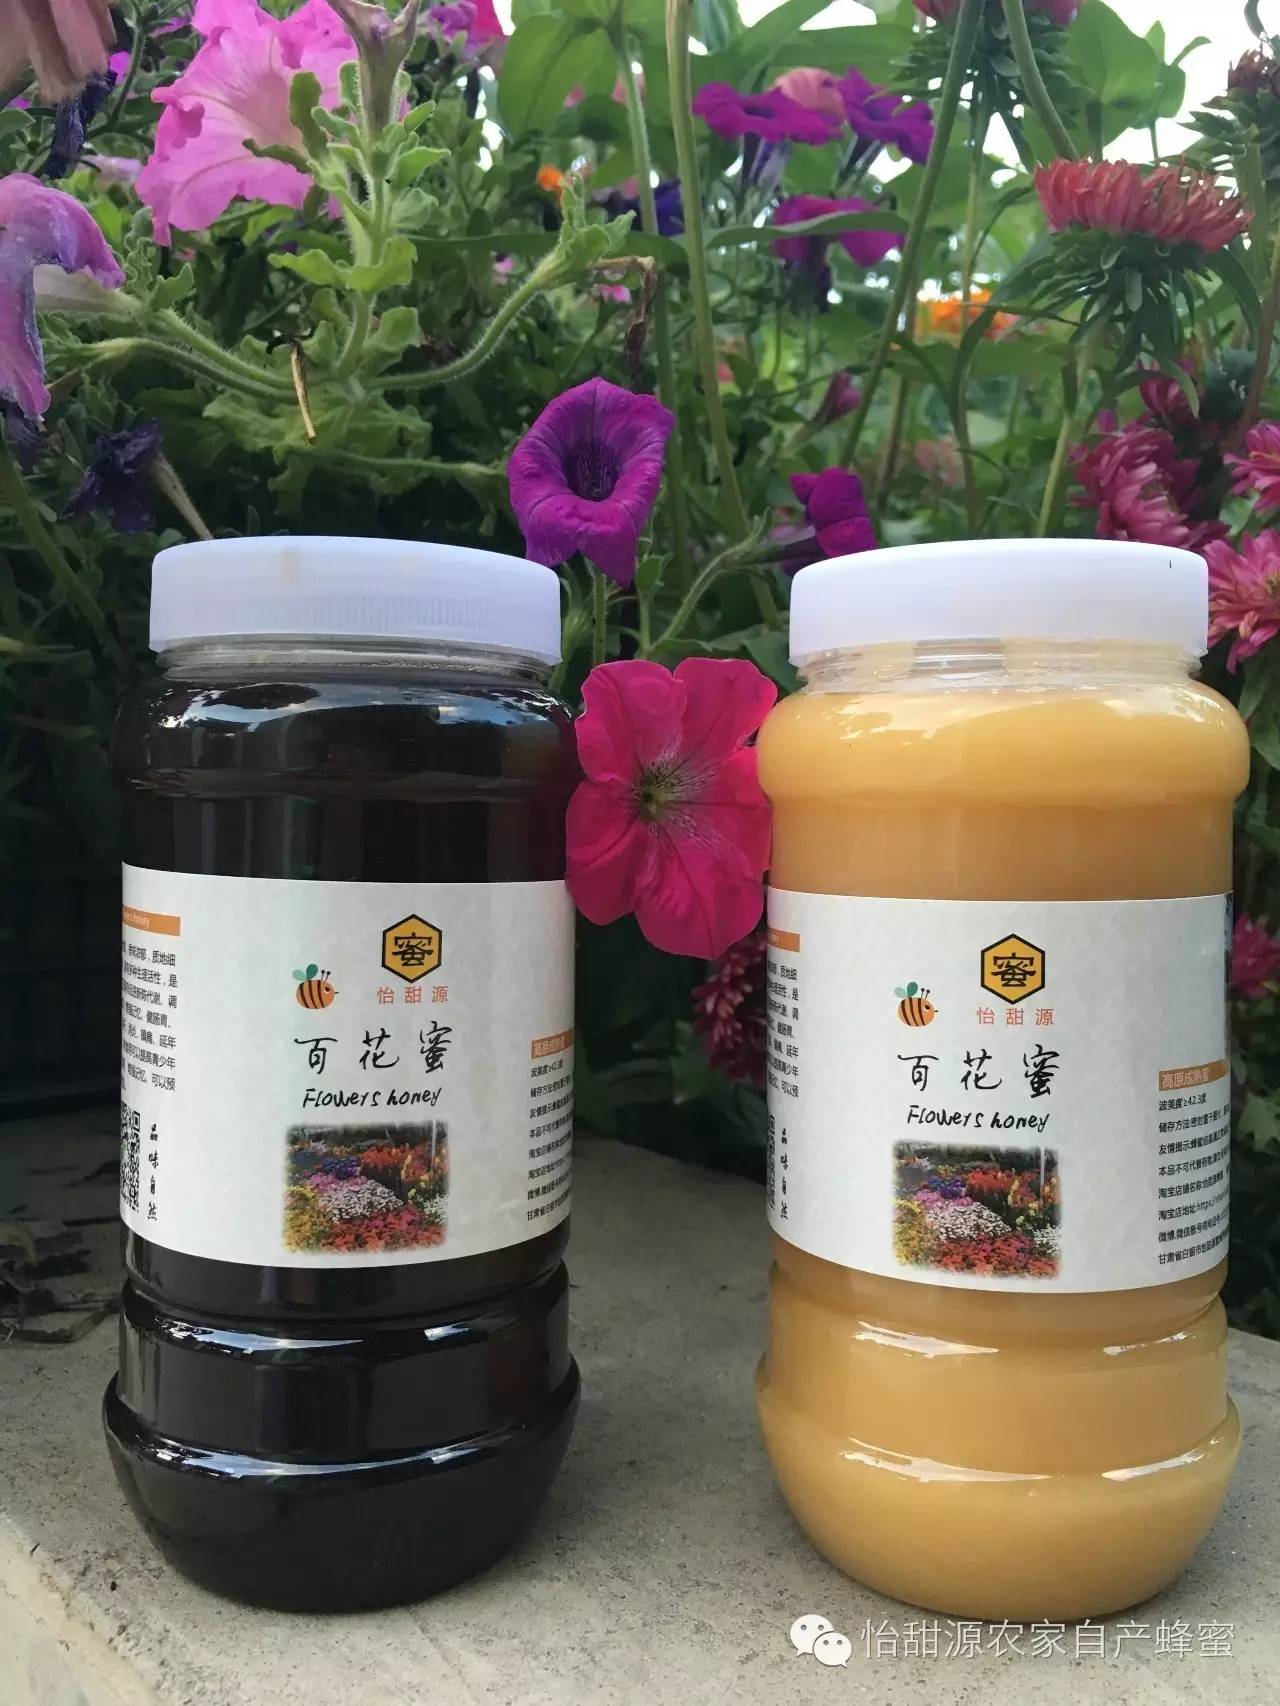 欧盟 蜂蜜和黄豆 冰糖雪梨蜂蜜的做法 俄罗斯黑蜂蜜椴树蜜 蜂蜜双仁面膜